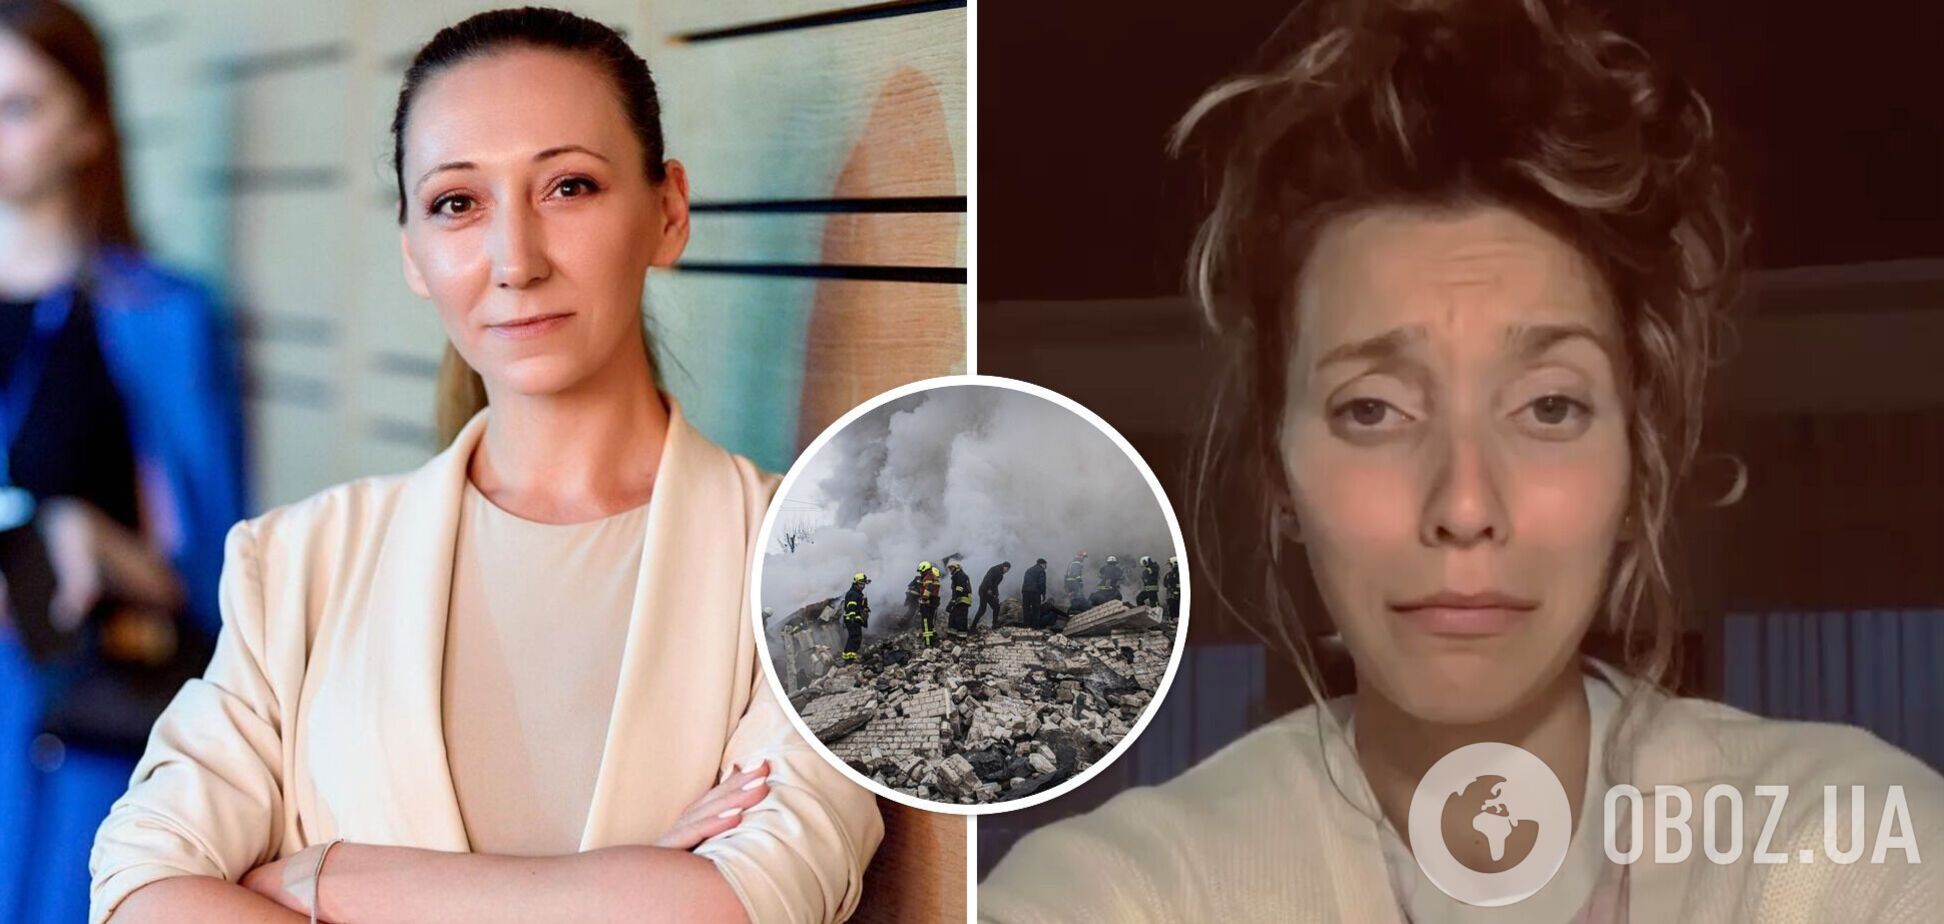 Російський продюсер у день обстрілу України зробив експіарниці Тодоренко цинічну пропозицію: вона згадала про 'вагіну в халаті'